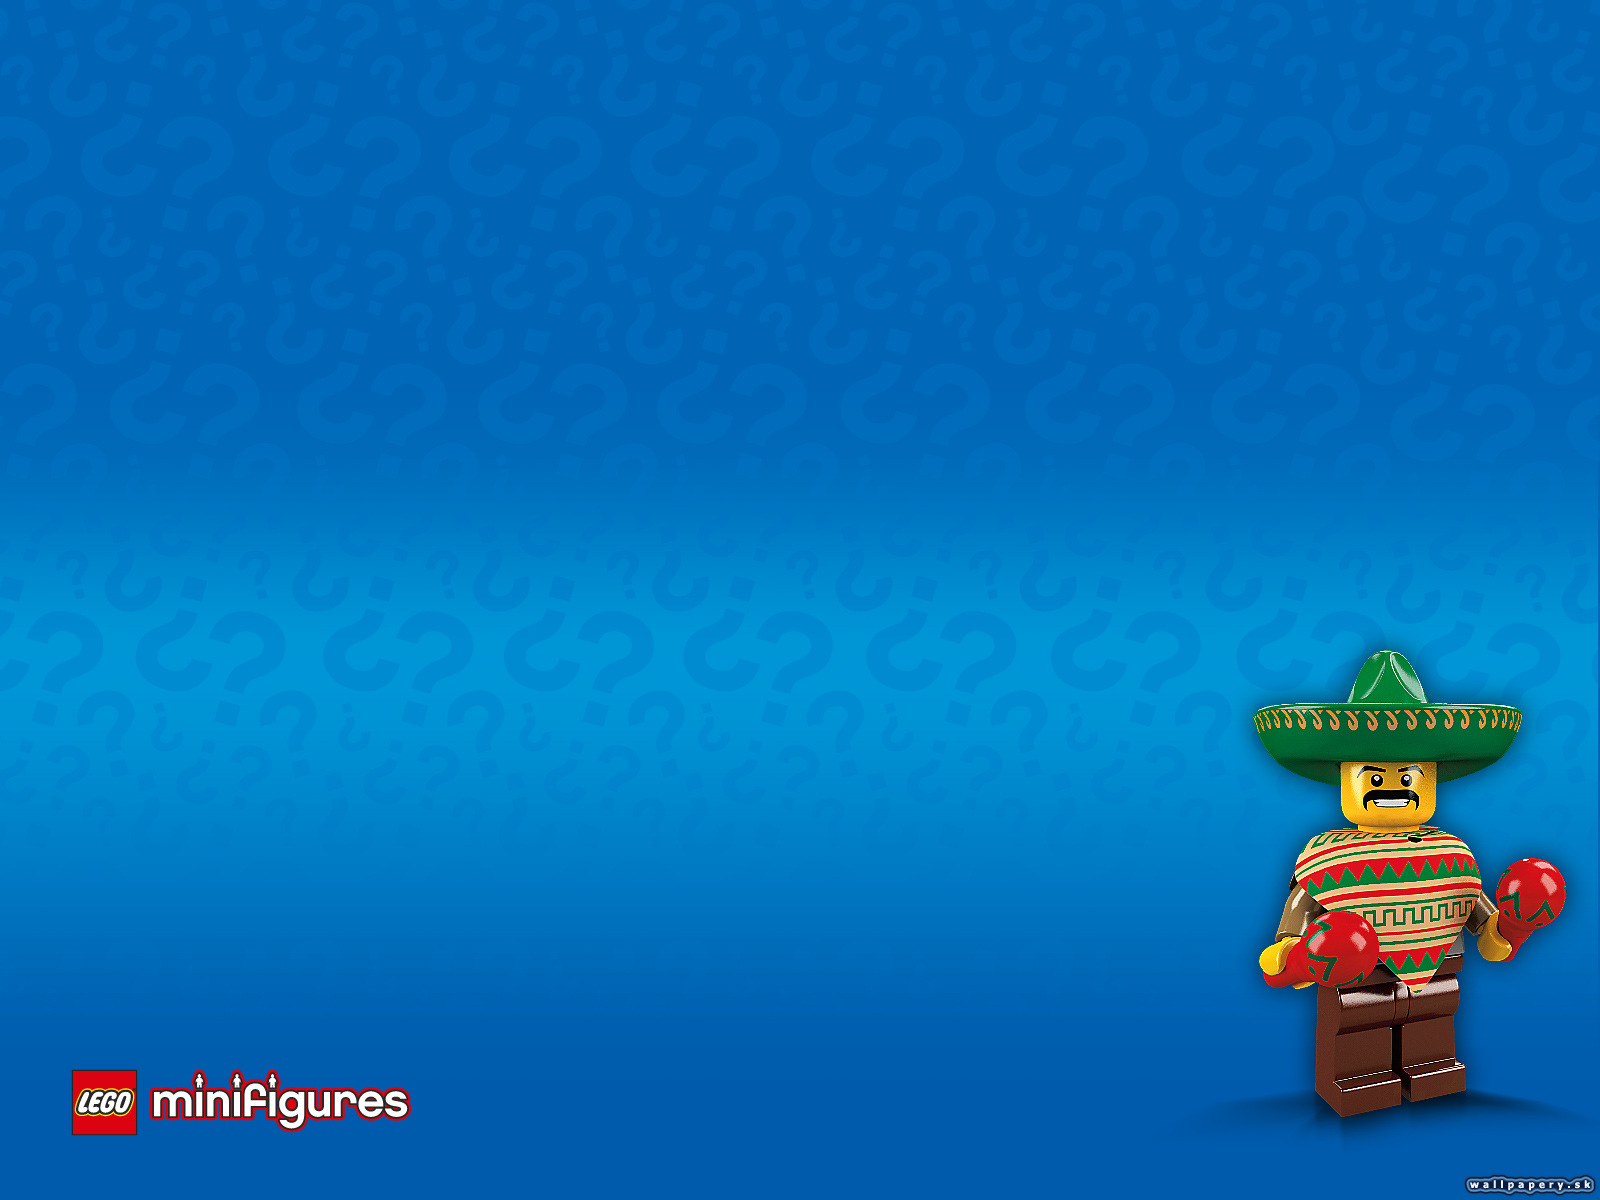 LEGO Minifigures Online - wallpaper 34